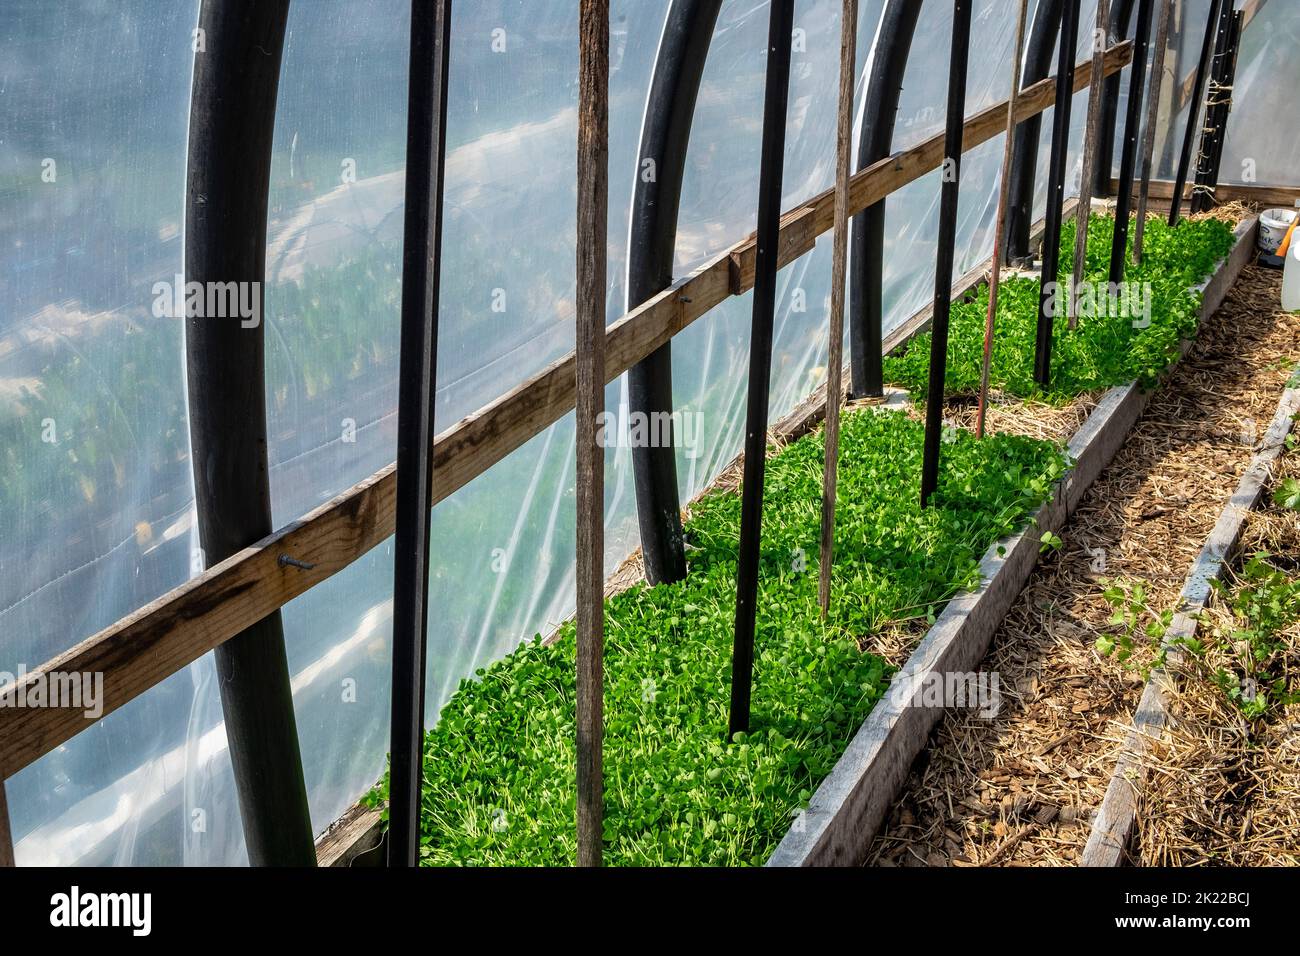 Tunnel de cerceau de jardin construit à partir de tubes de ferme de poissons lourds, avec un lit sous le fumier vert de trèfle de cramoisi et des chemins de copeaux de bois Banque D'Images